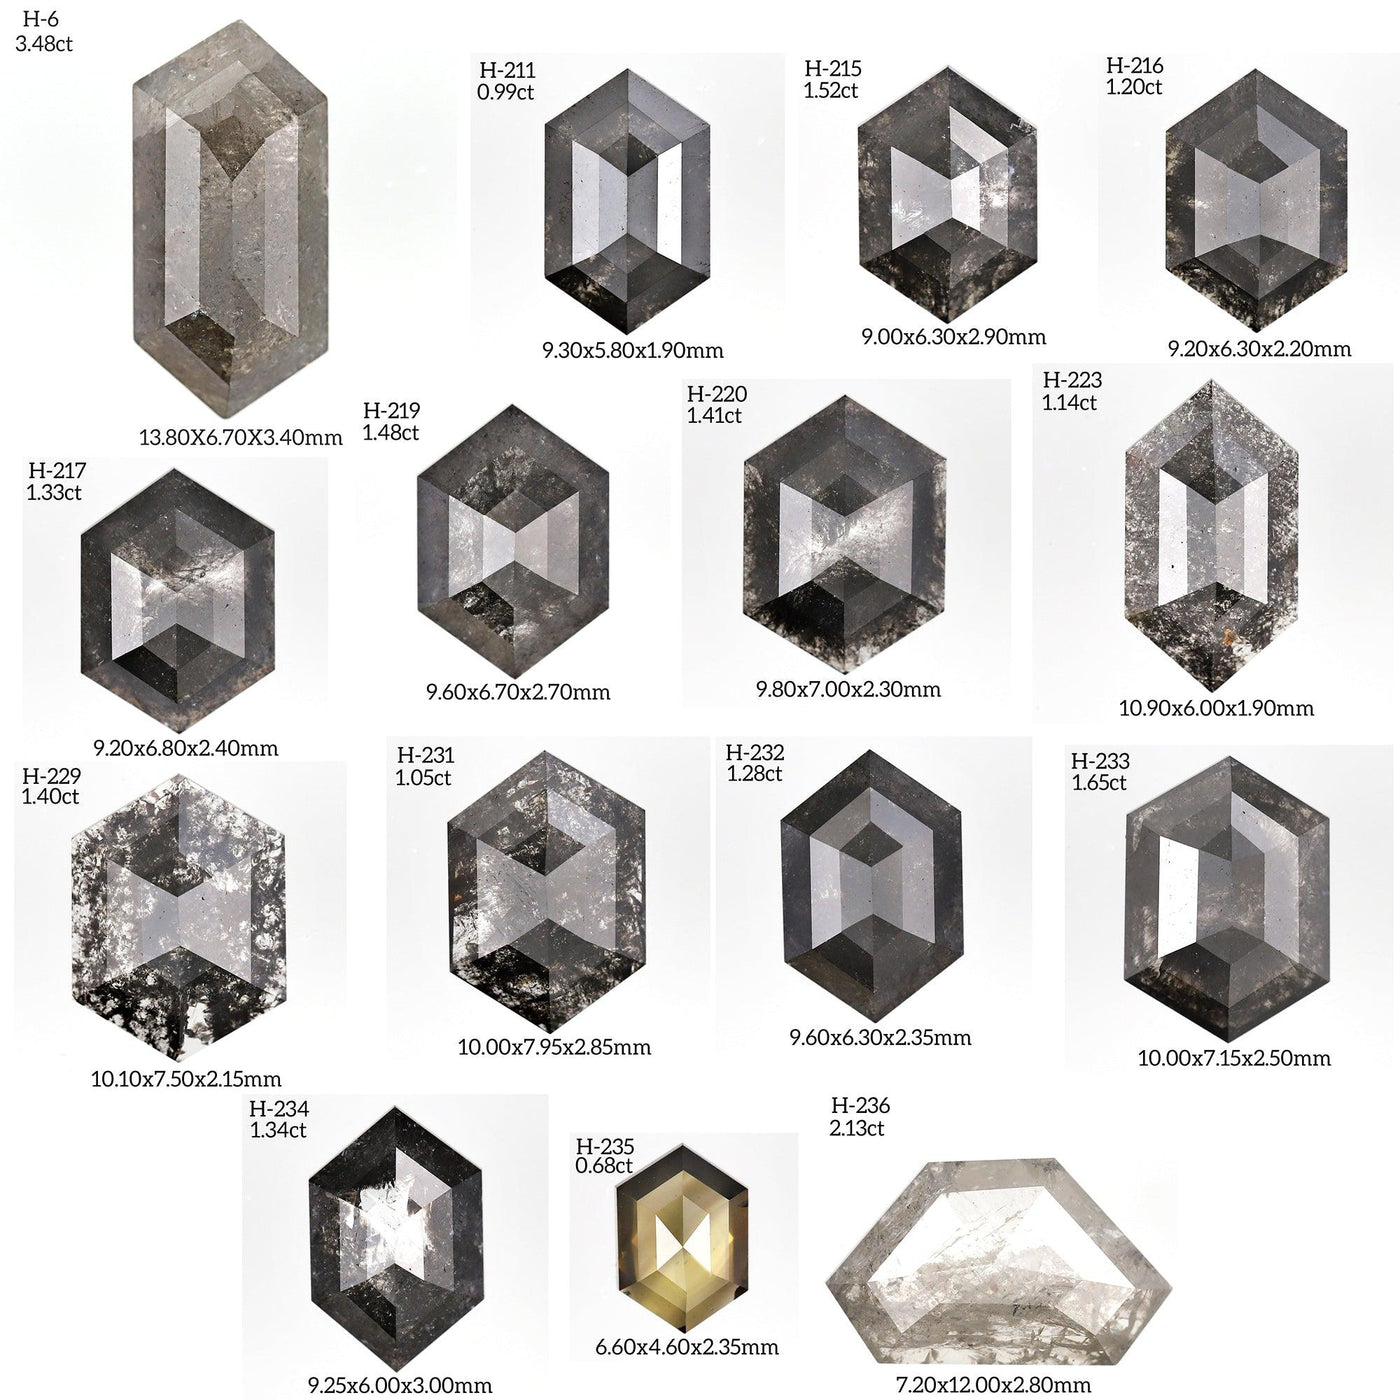 H243 - Salt and pepper hexagon diamond